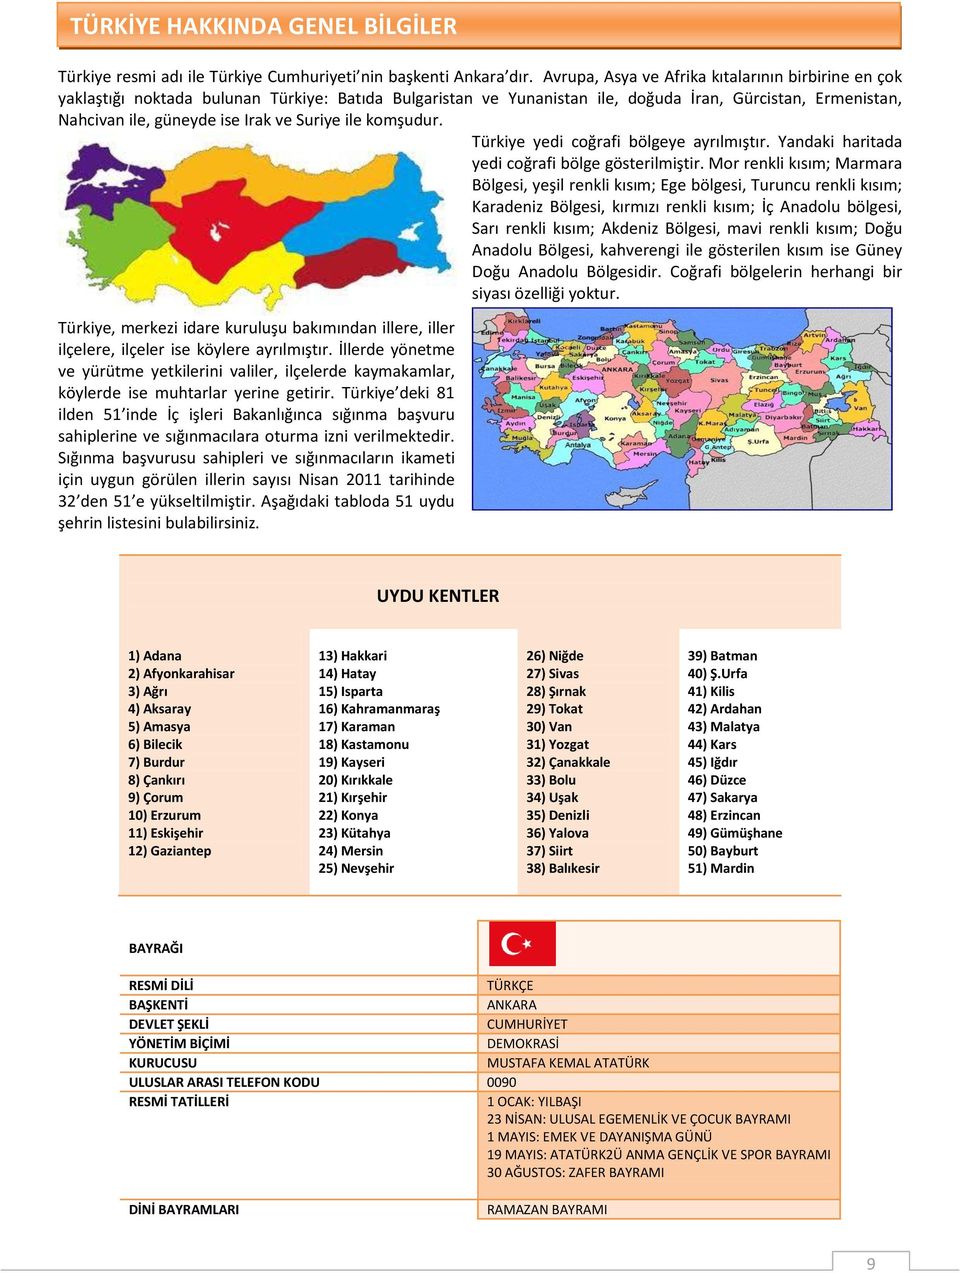 Suriye ile komşudur. Türkiye yedi coğrafi bölgeye ayrılmıştır. Yandaki haritada yedi coğrafi bölge gösterilmiştir.